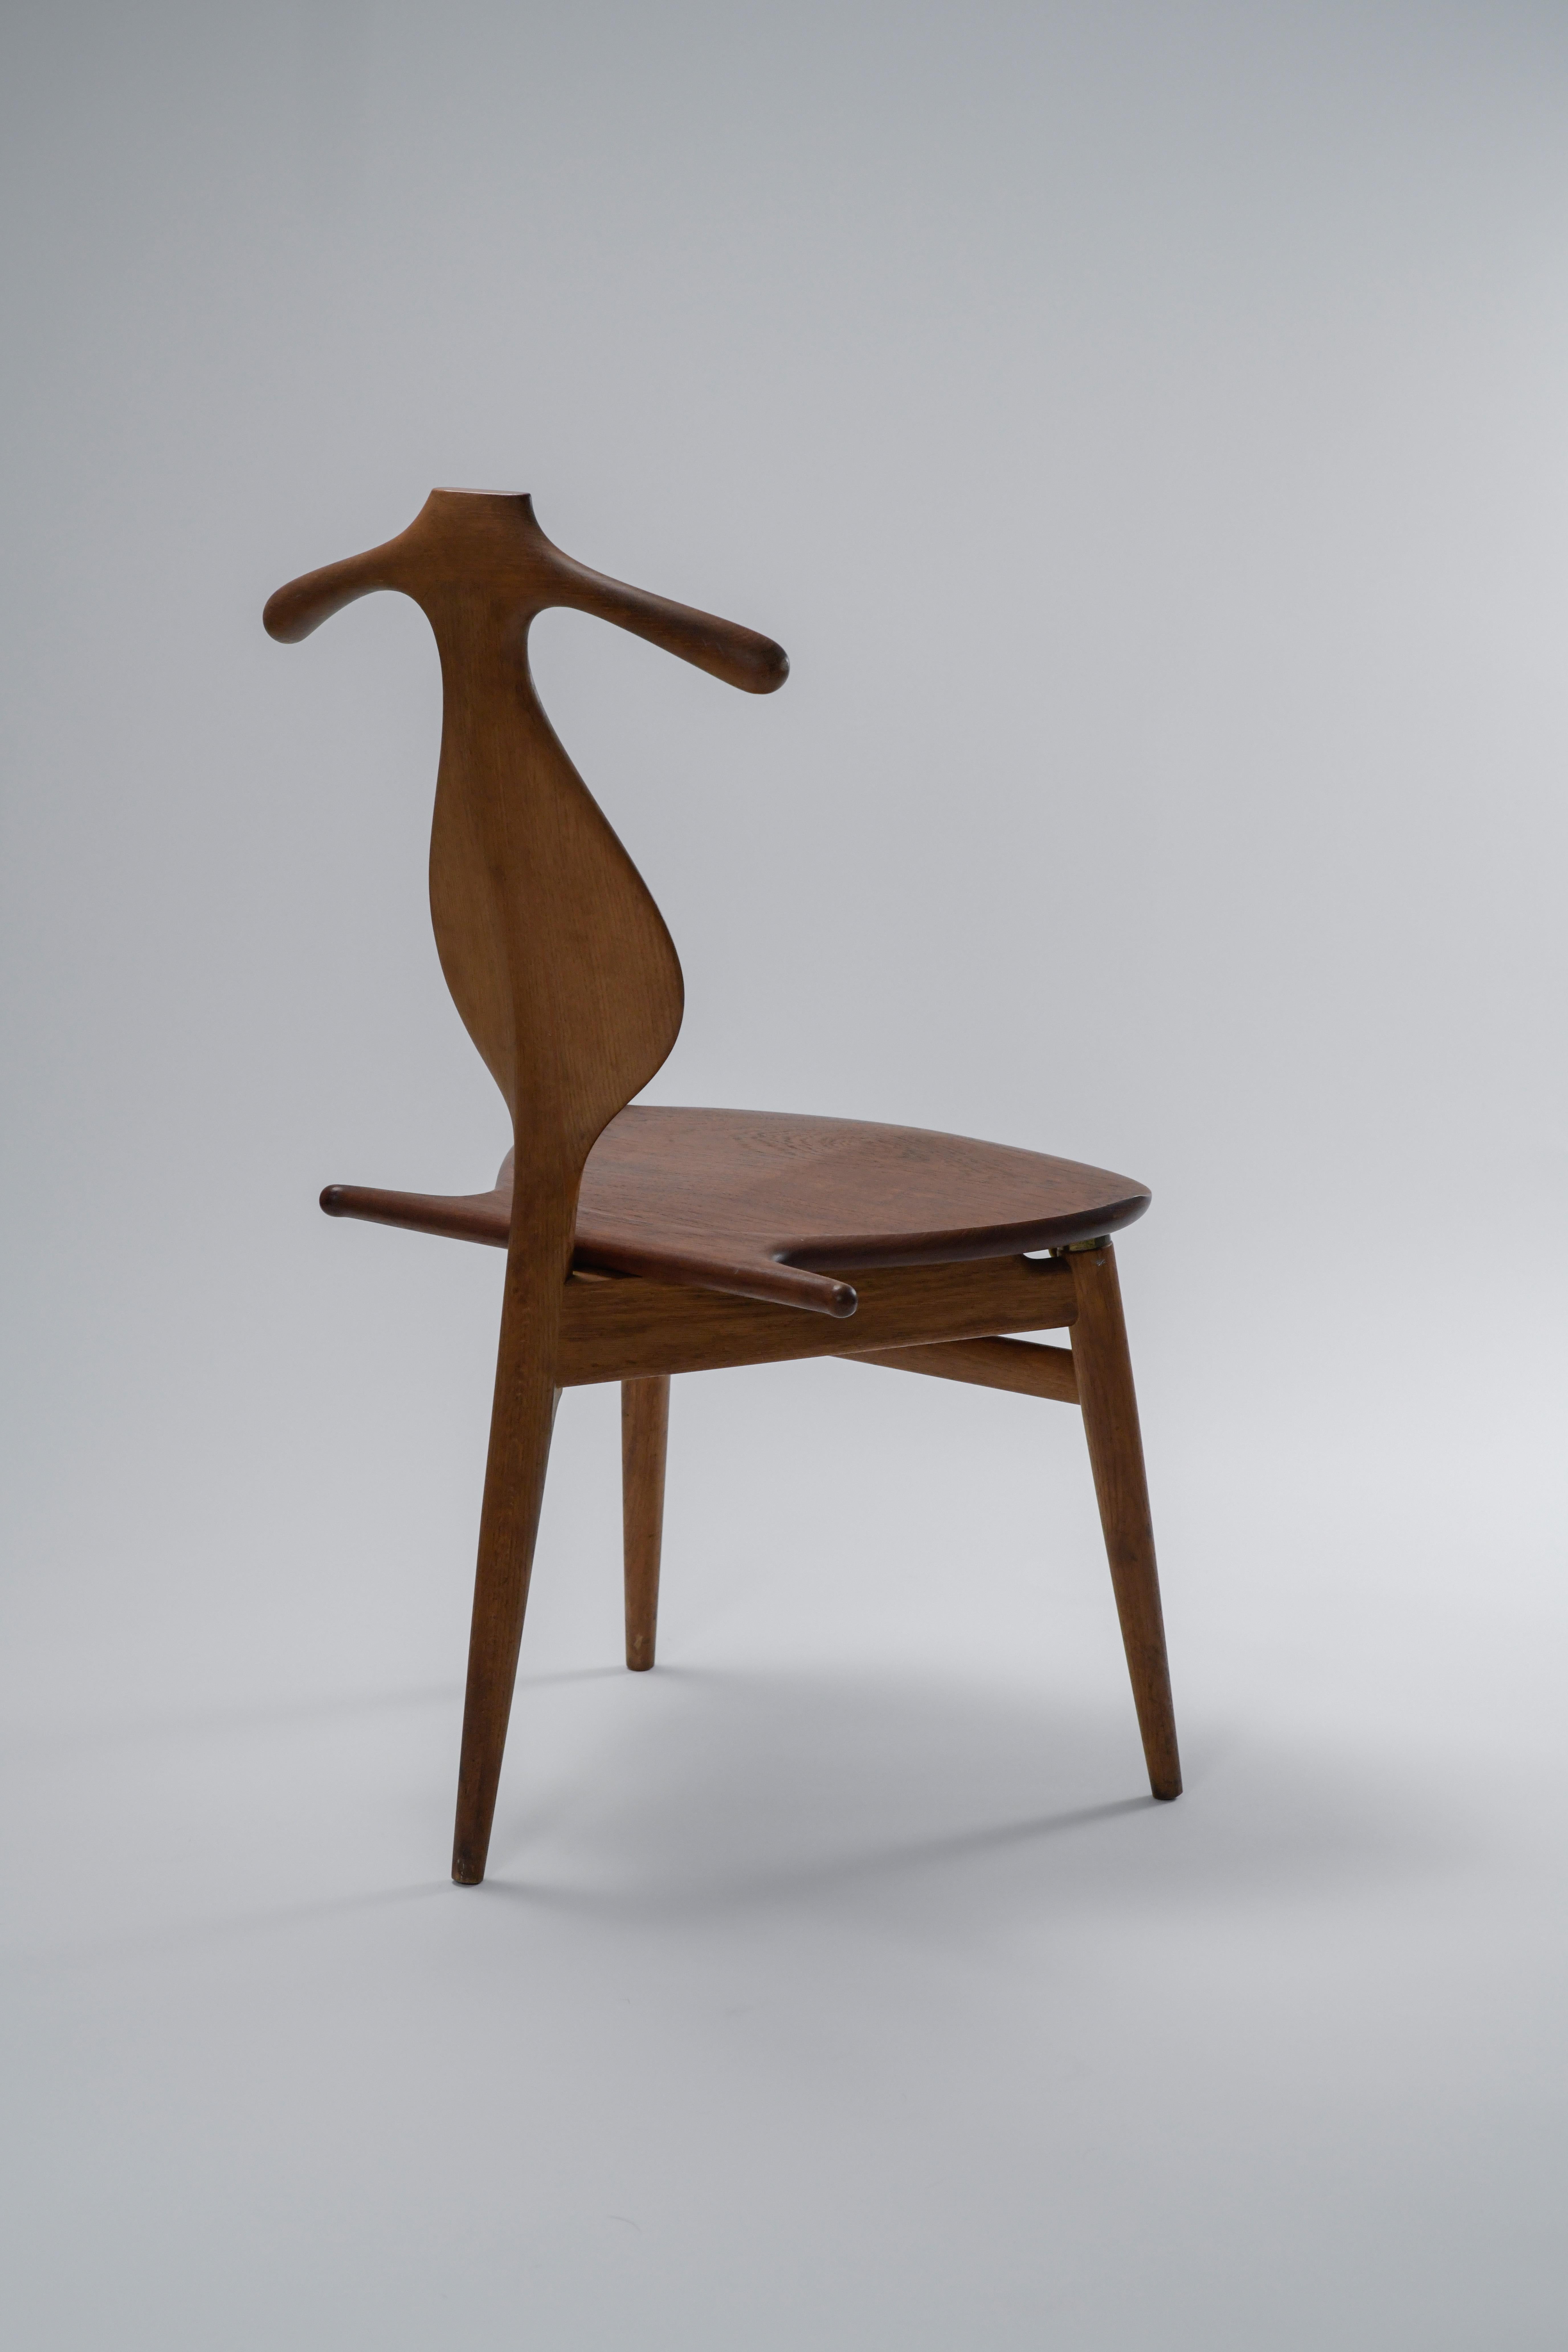 Modell JH-540 Valet Stuhl von Hans J. Wegner für Johannes Hansen. 

Dieses prächtige Stück Design aus der Mitte des Jahrhunderts ist ebenso funktionell wie schön. Der Sitz lässt sich hochklappen, um eine Ablage für Hosen zu schaffen, und gibt ein